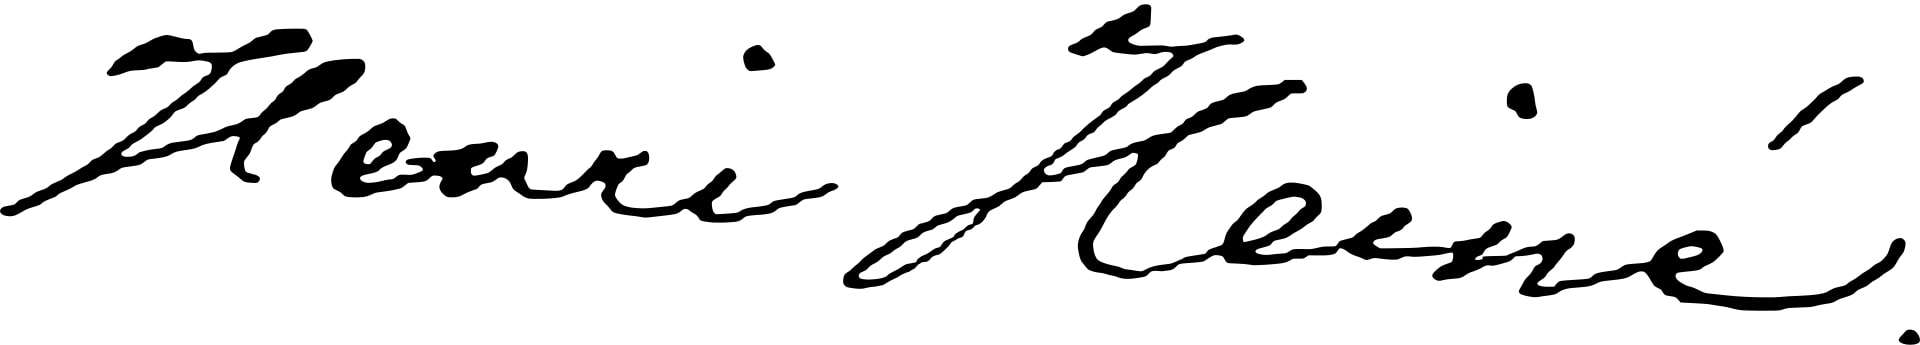 Heinrich Heine Signature